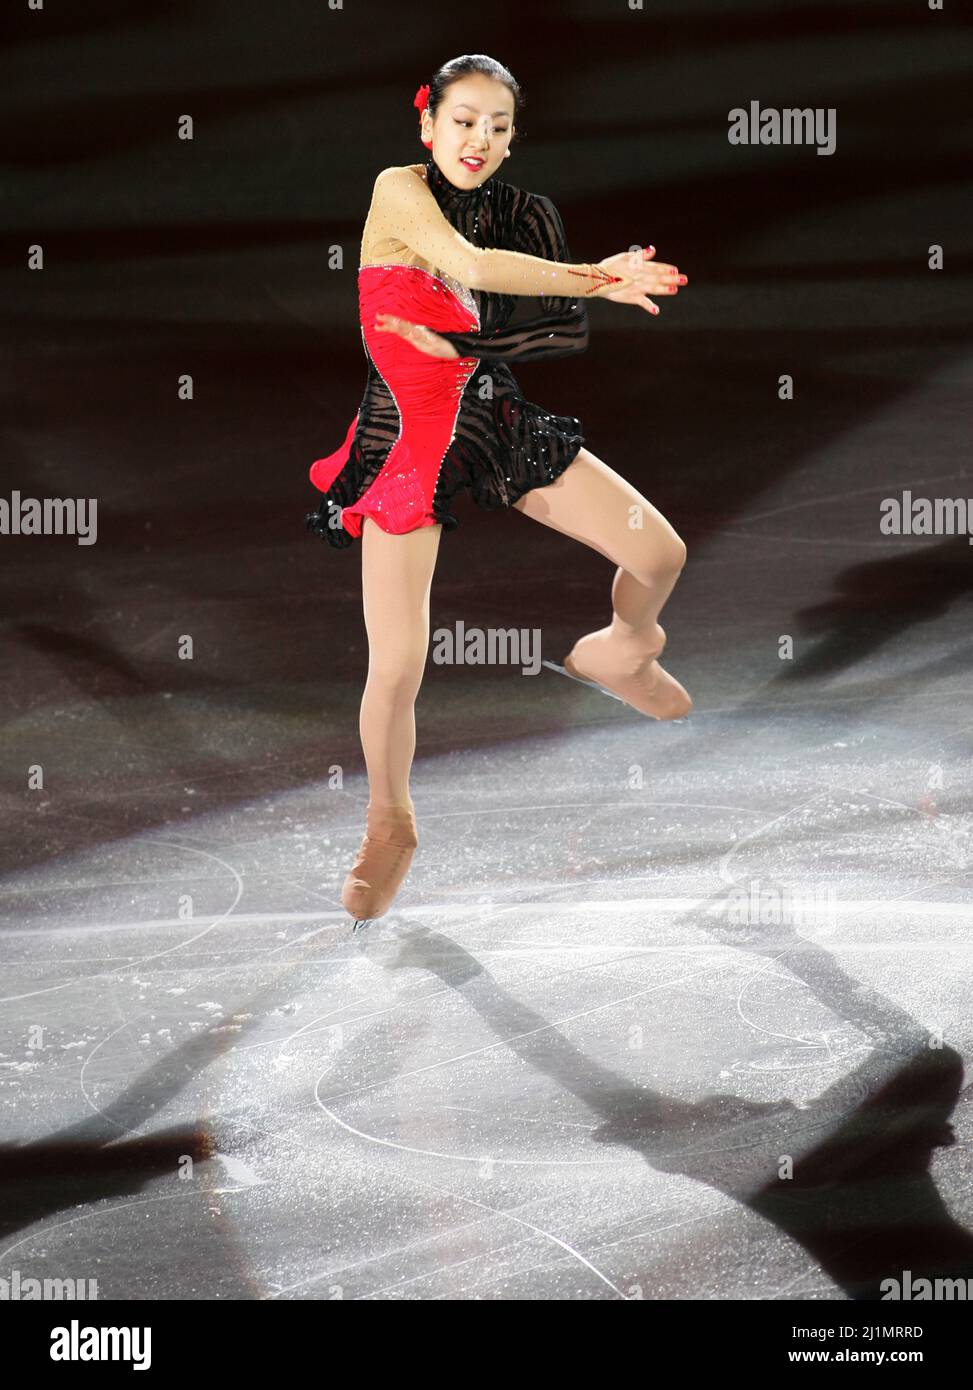 14 déc 2008-Goyang, Corée du Sud-le Japon Mao Asada se produit lors du gala de l'exposition finale 2008/2009 du Grand Prix de patinage artistique de l'UIP à Goyang près de Séoul le 14 décembre 2008. Banque D'Images